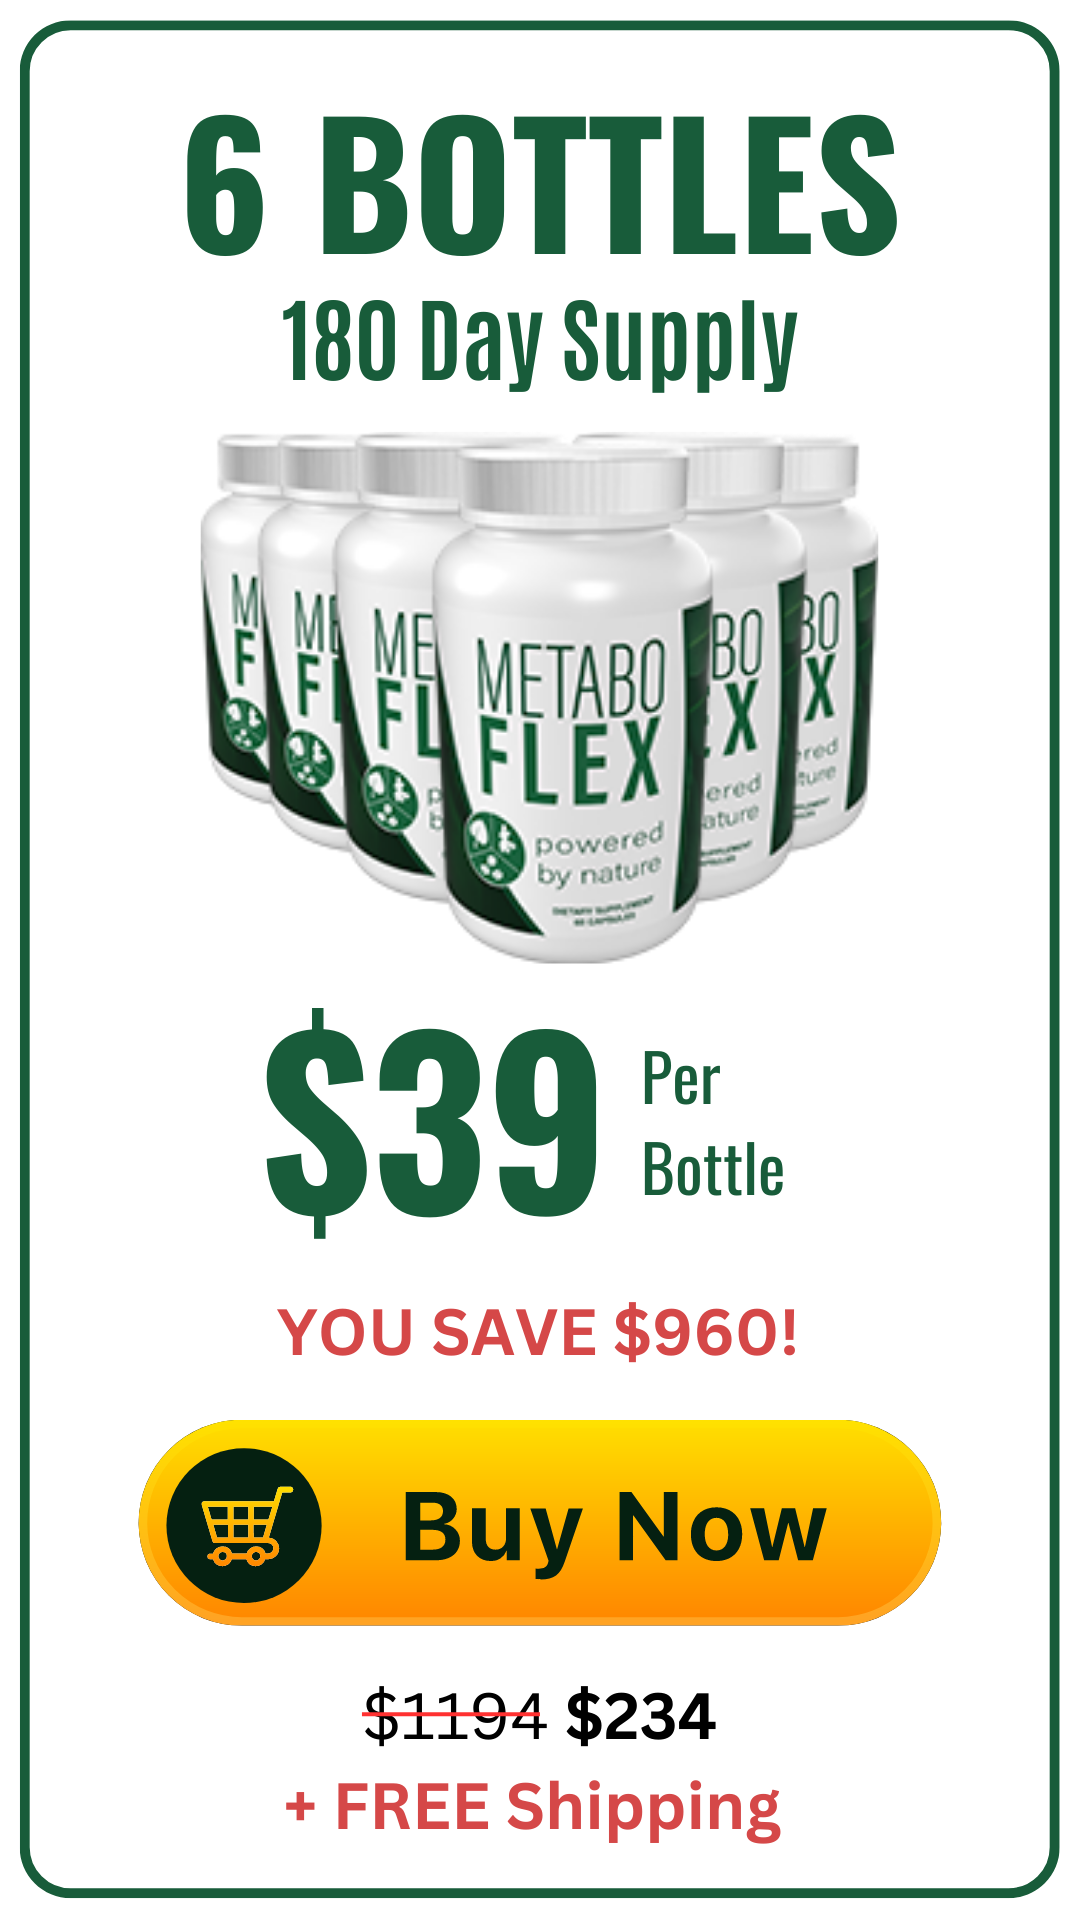 buy-metabo flex-6-bottles